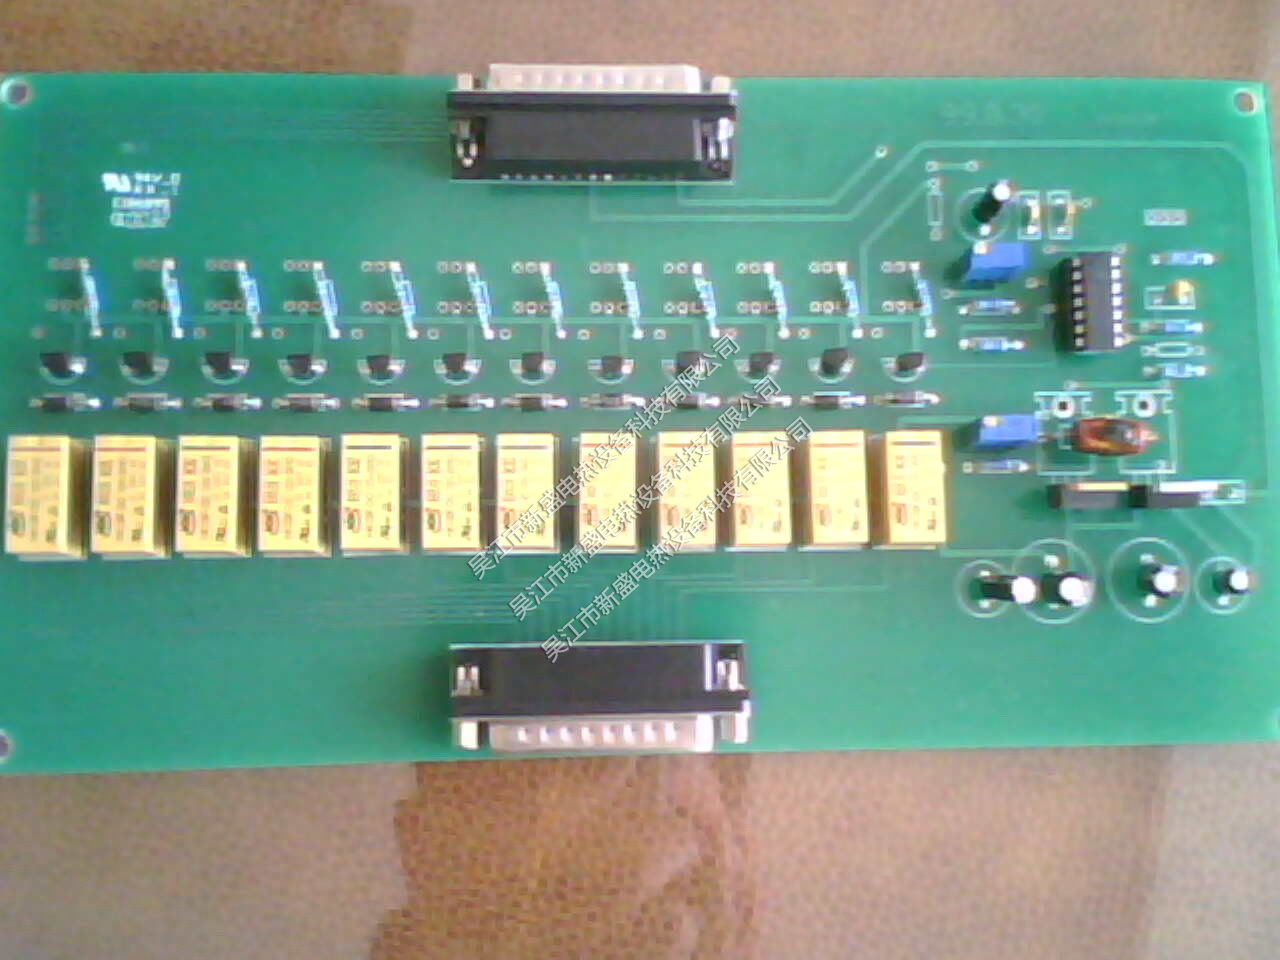 Microcomputer relay sampling model